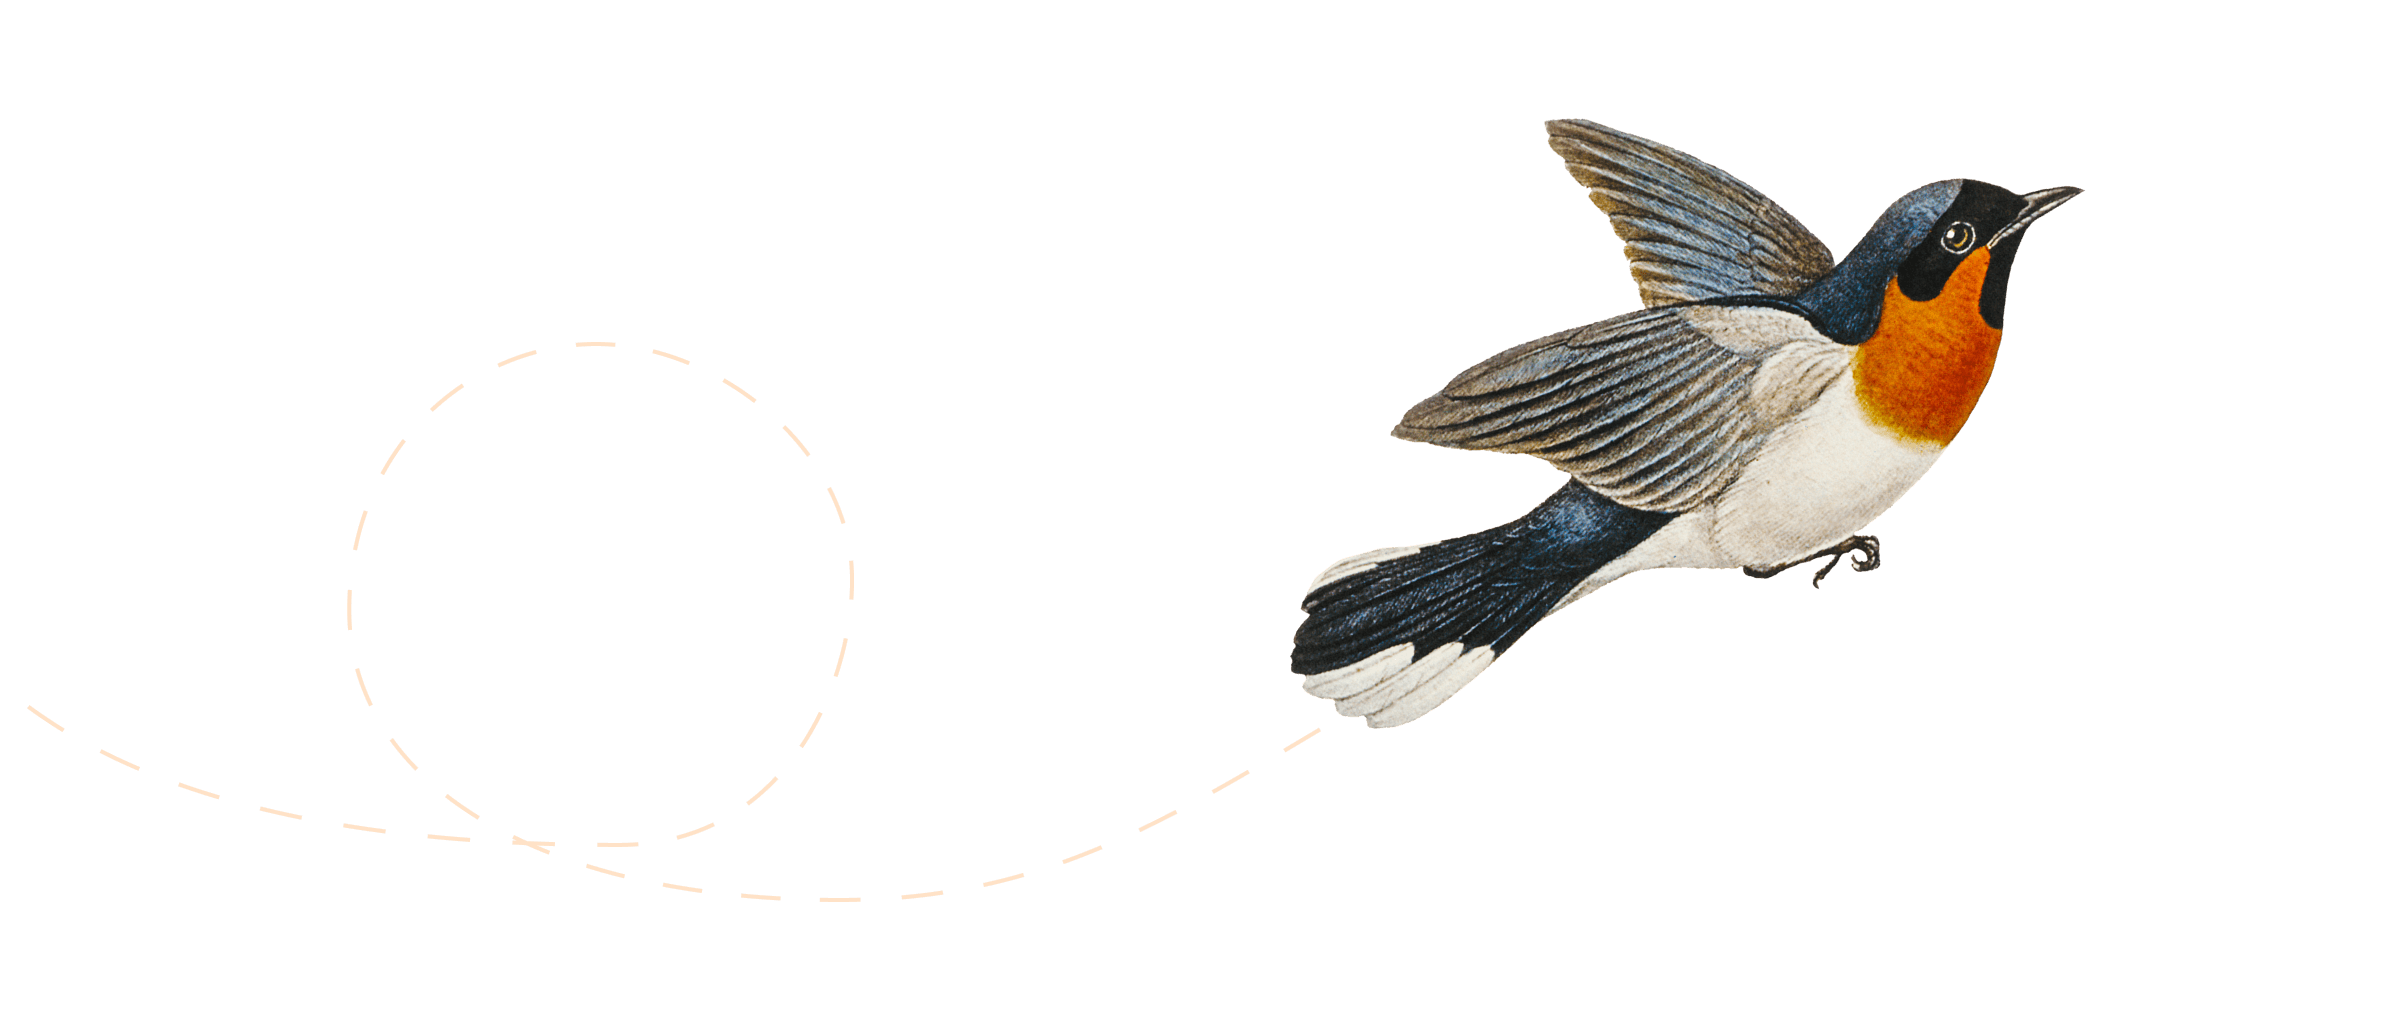 Illustrazione di un uccello che vola.